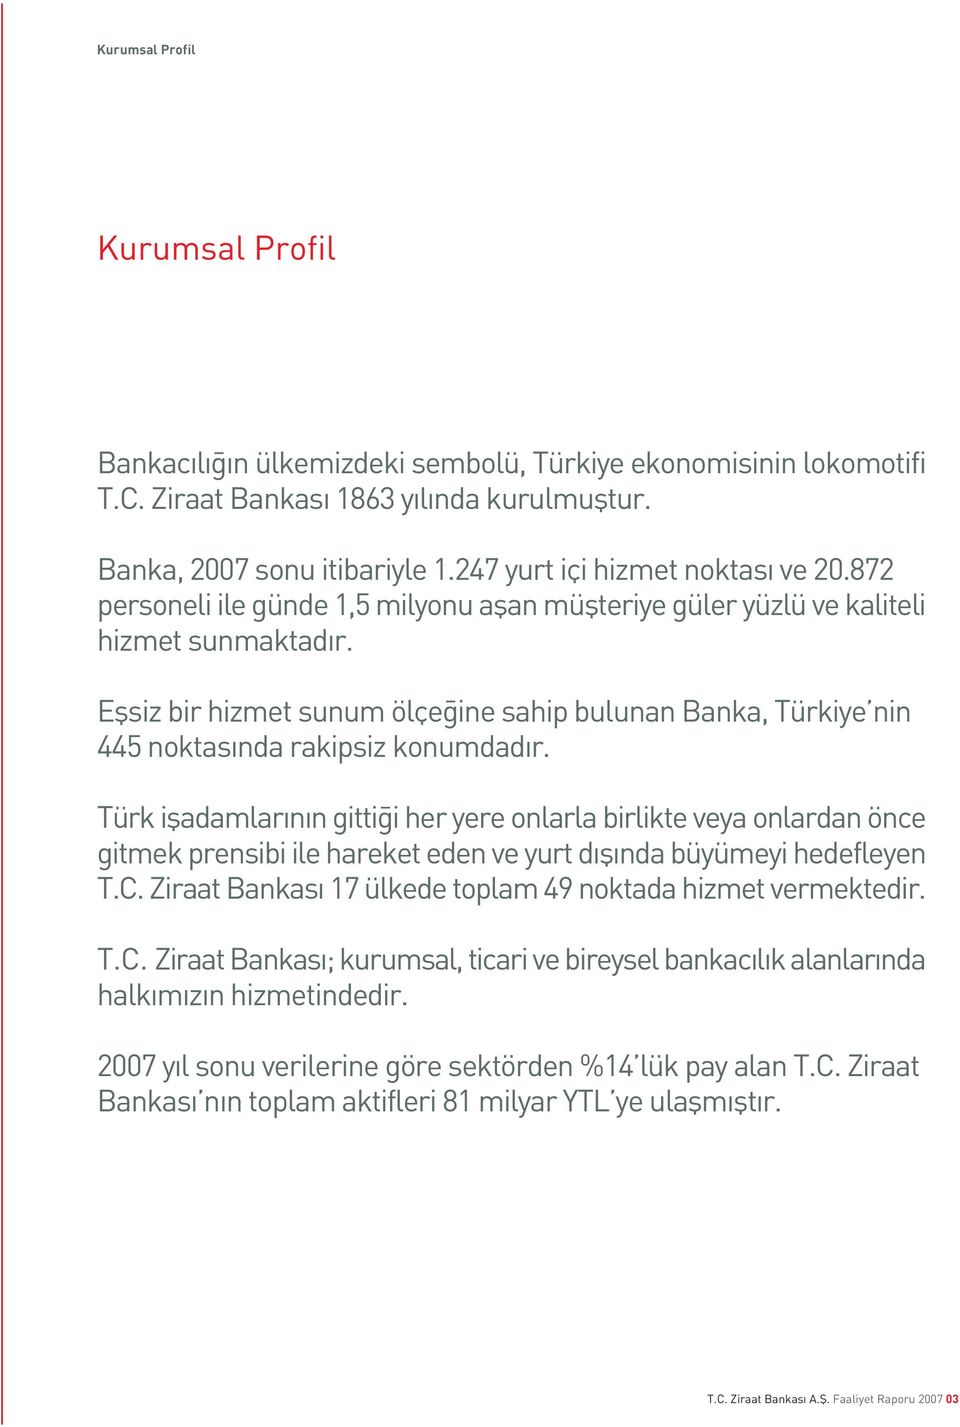 Eflsiz bir hizmet sunum ölçe ine sahip bulunan Banka, Türkiye nin 445 noktas nda rakipsiz konumdad r.